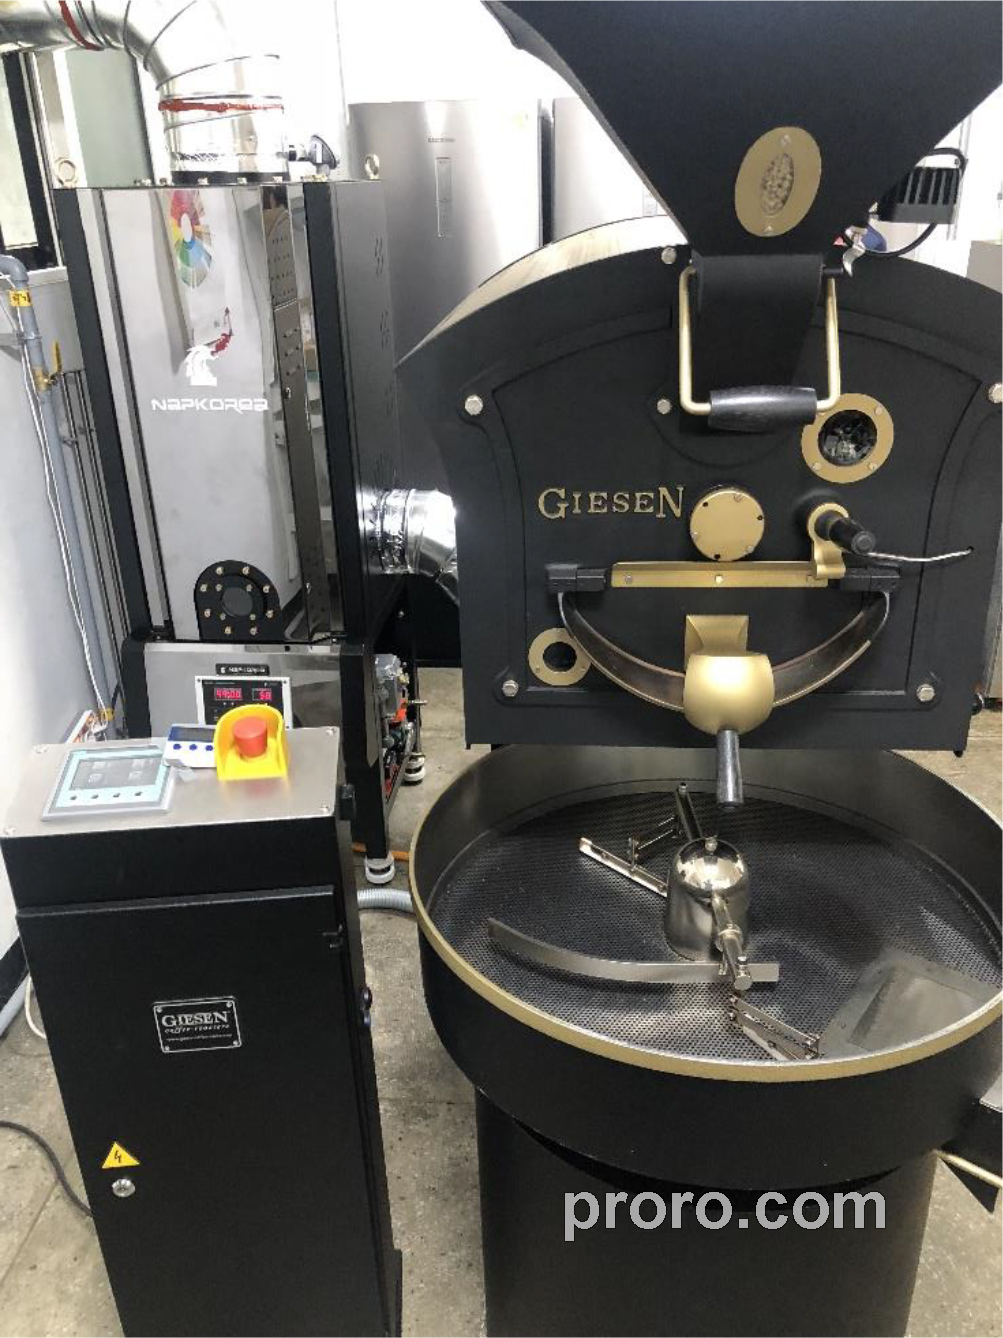 GIESEN 吉森咖啡烘焙机 消烟除味 后燃机 安装案例 - Quartz Coffee咖啡店